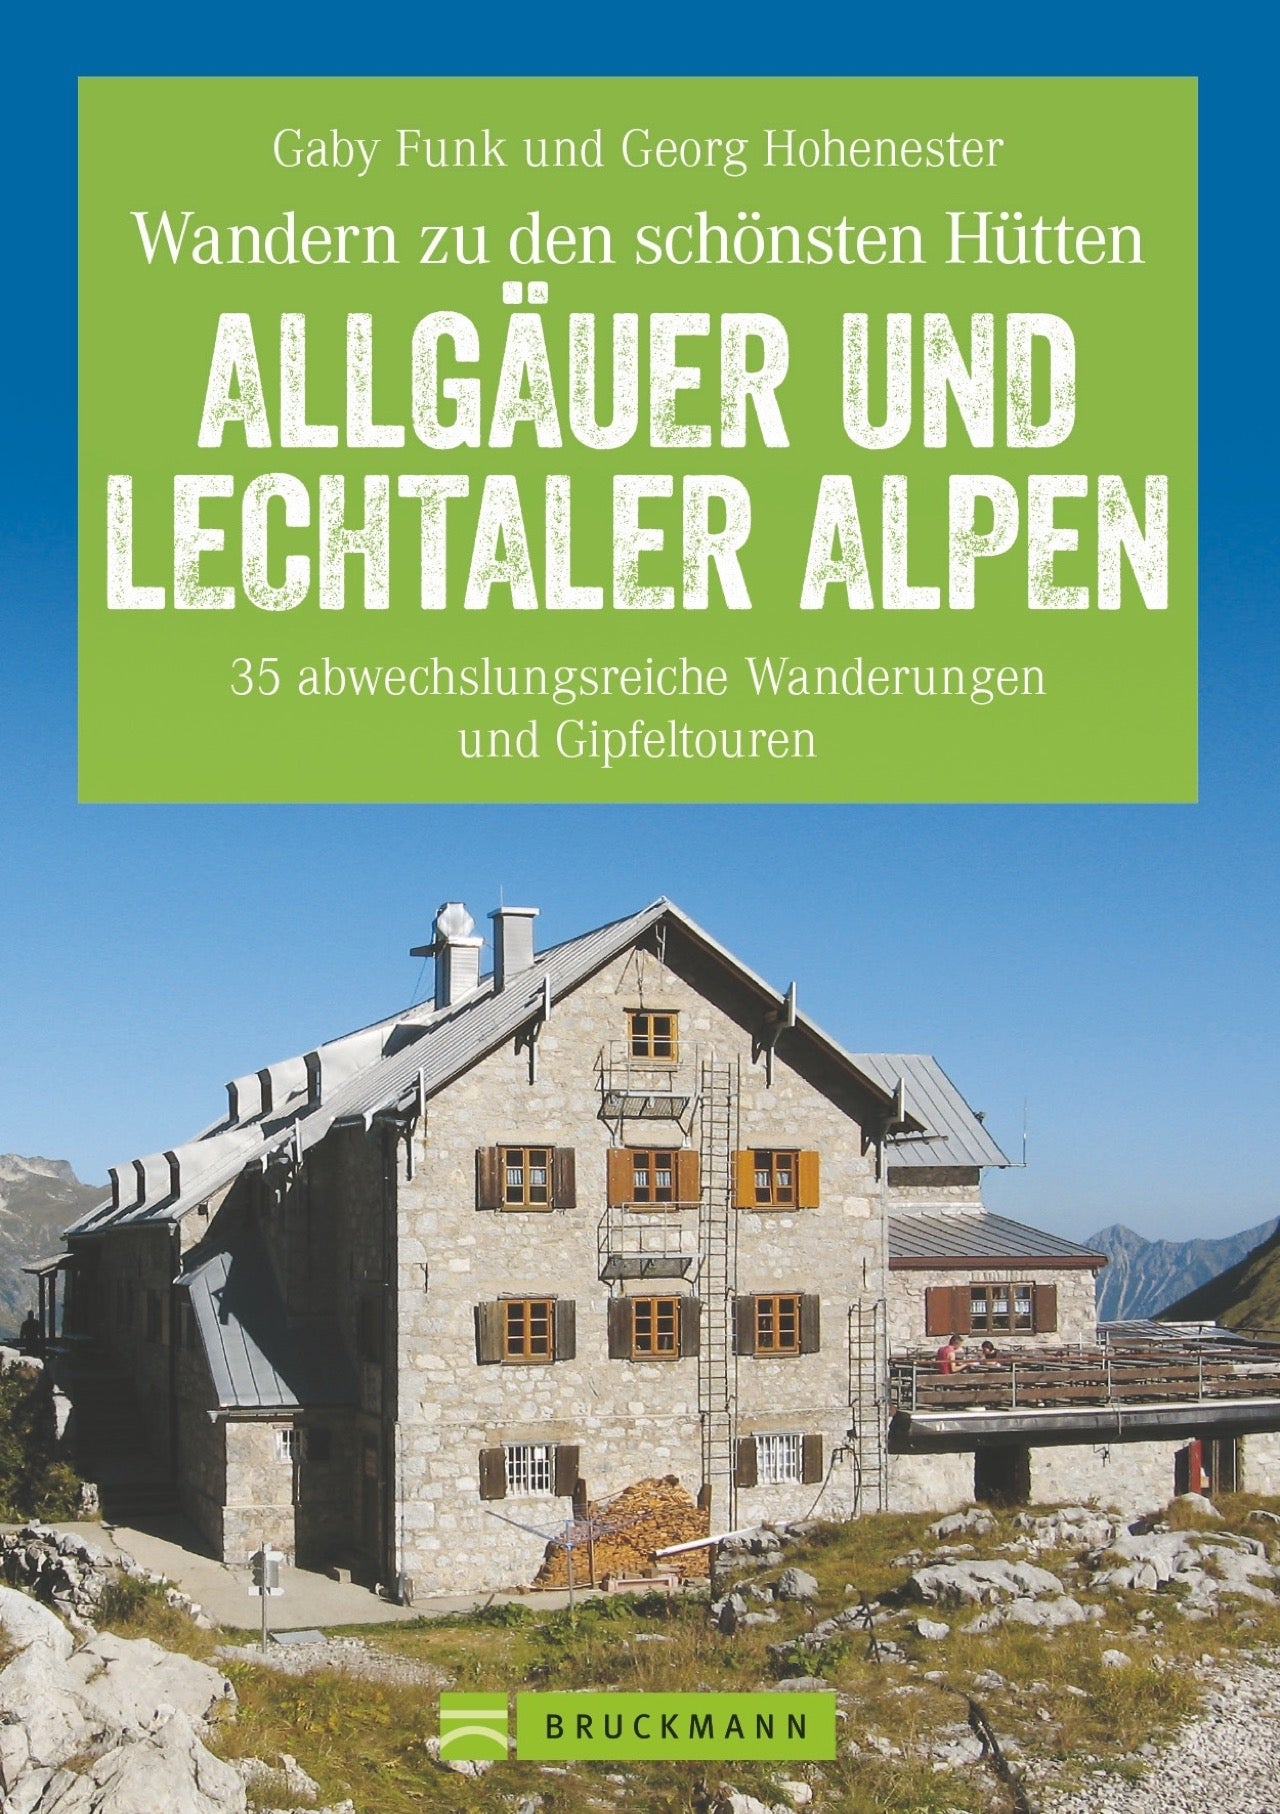 Allgäuer und Lechtal Alps (2018)